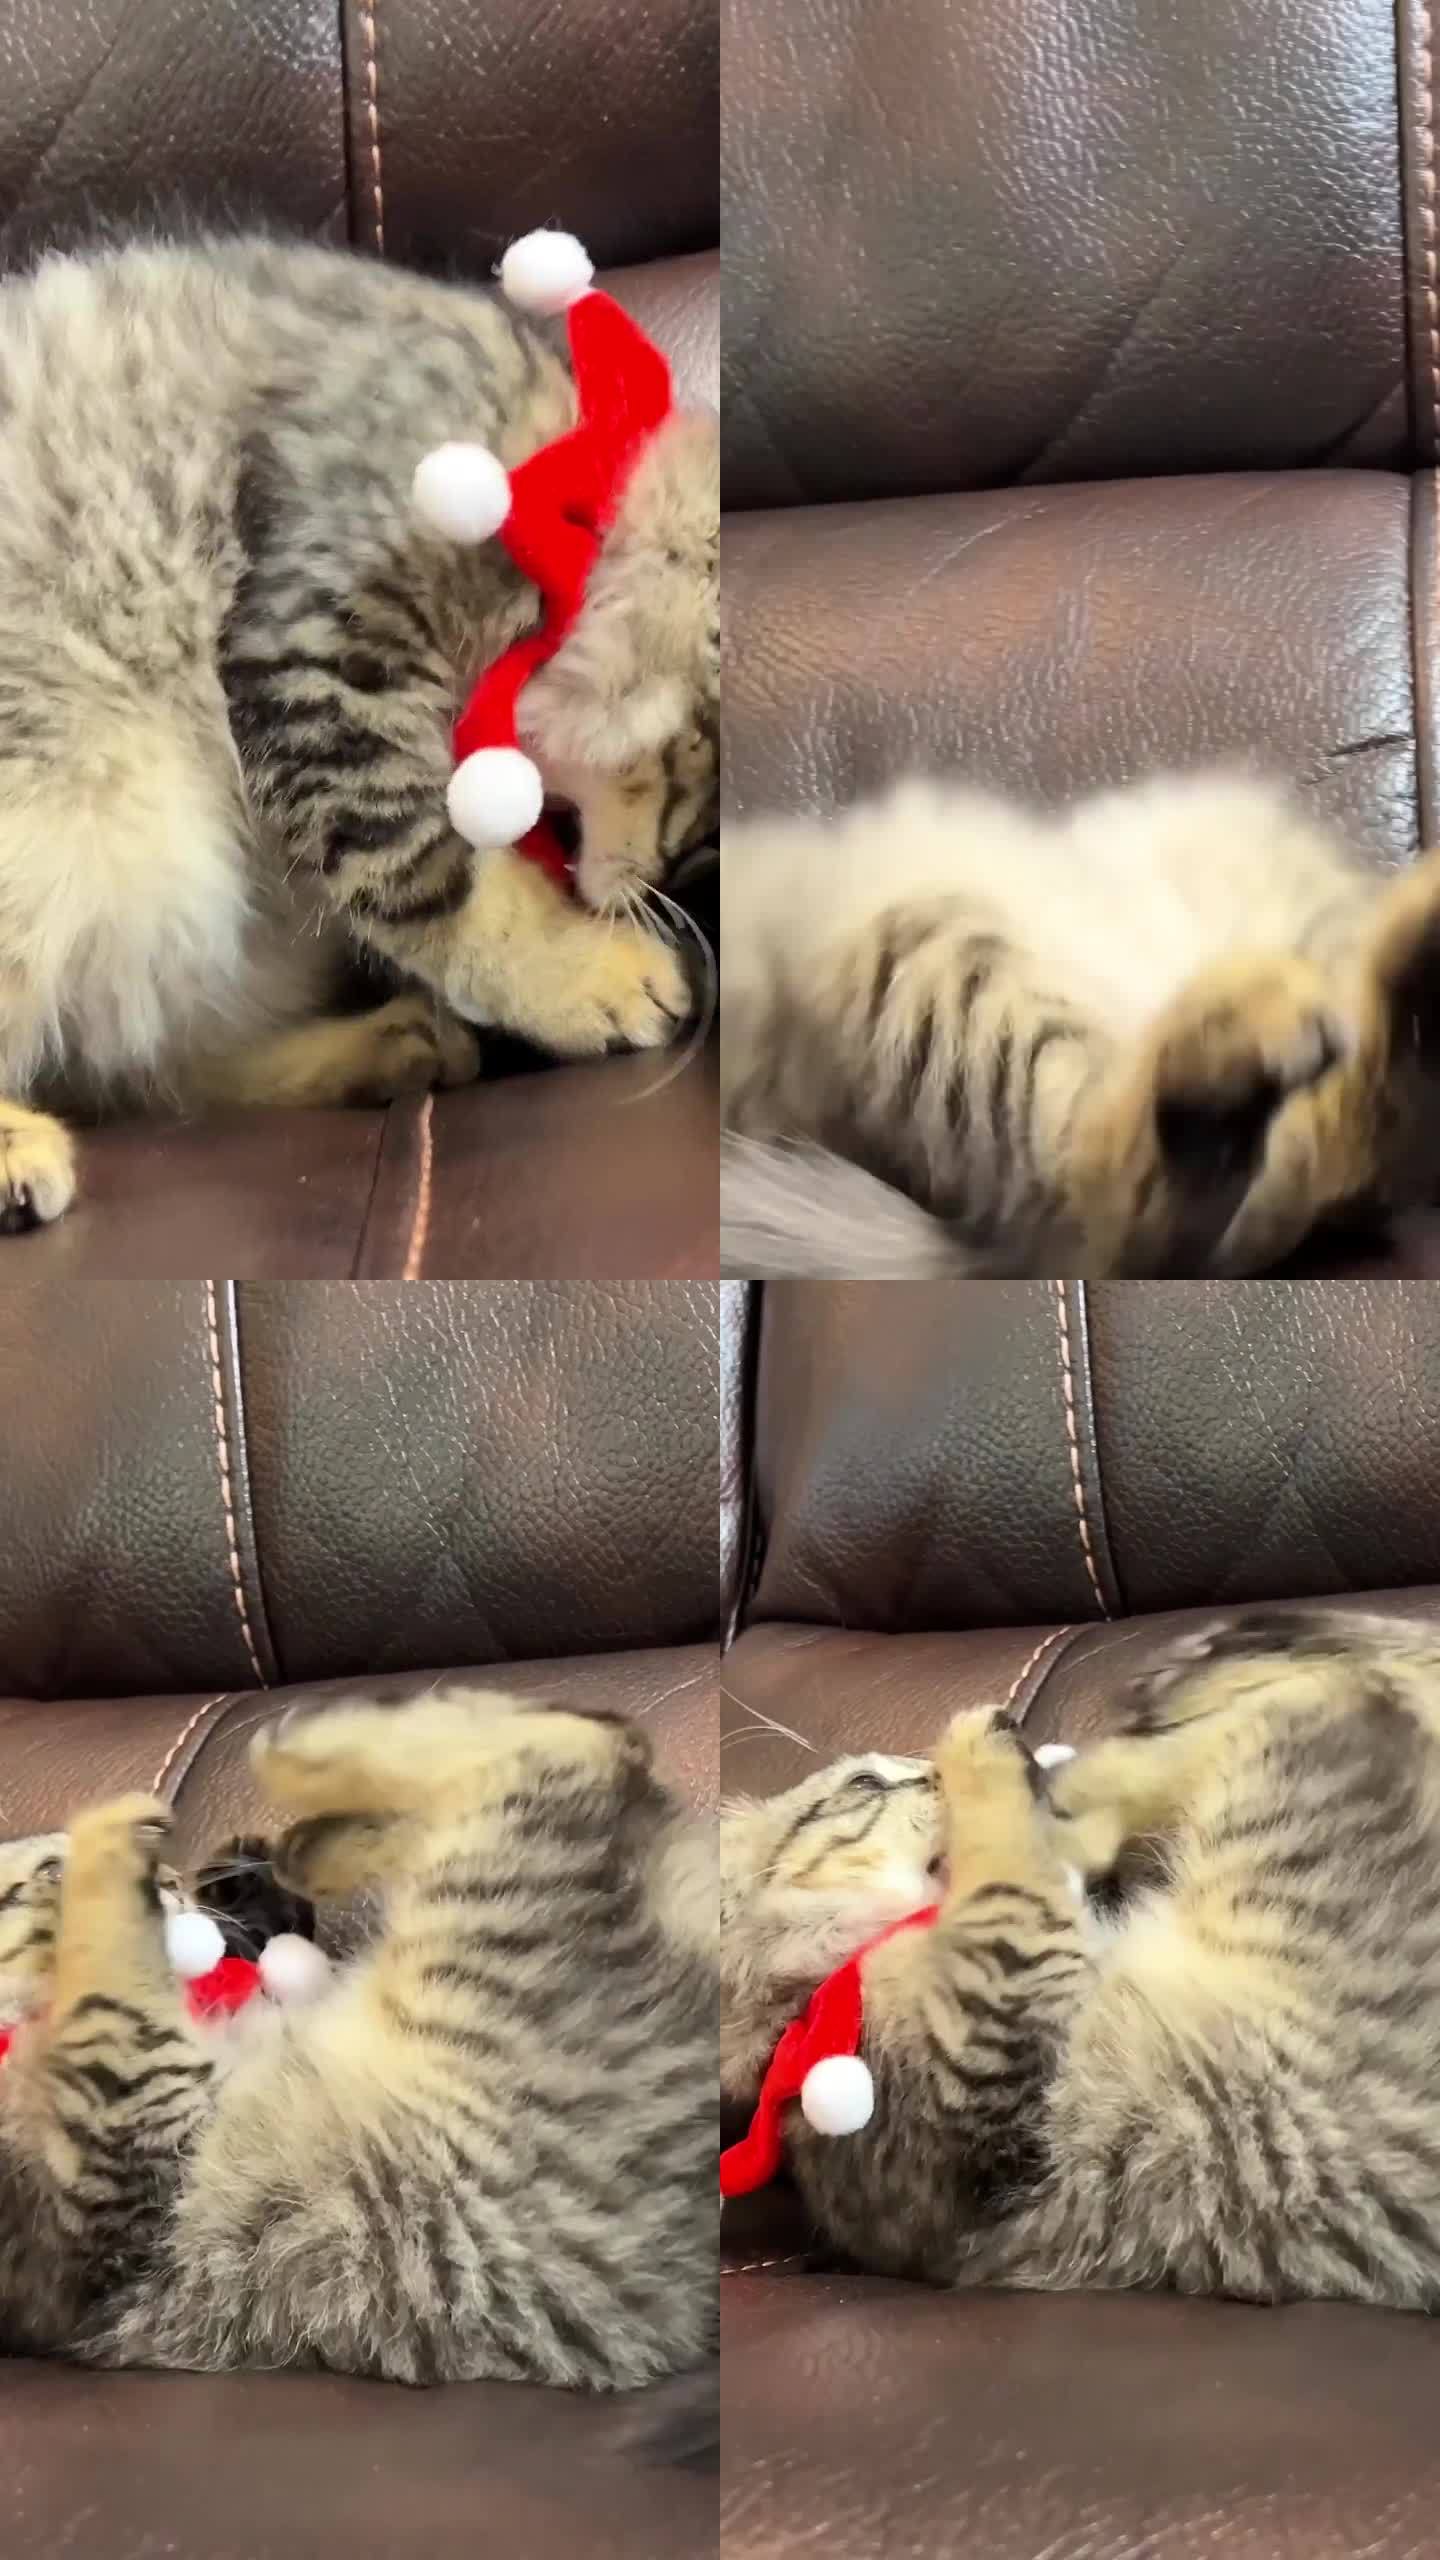 一只可爱的小猫正试图取下脖子上的绷带，这是它在圣诞节或新年时被抱起来的。它用前爪推开绷带，然后仰面倒